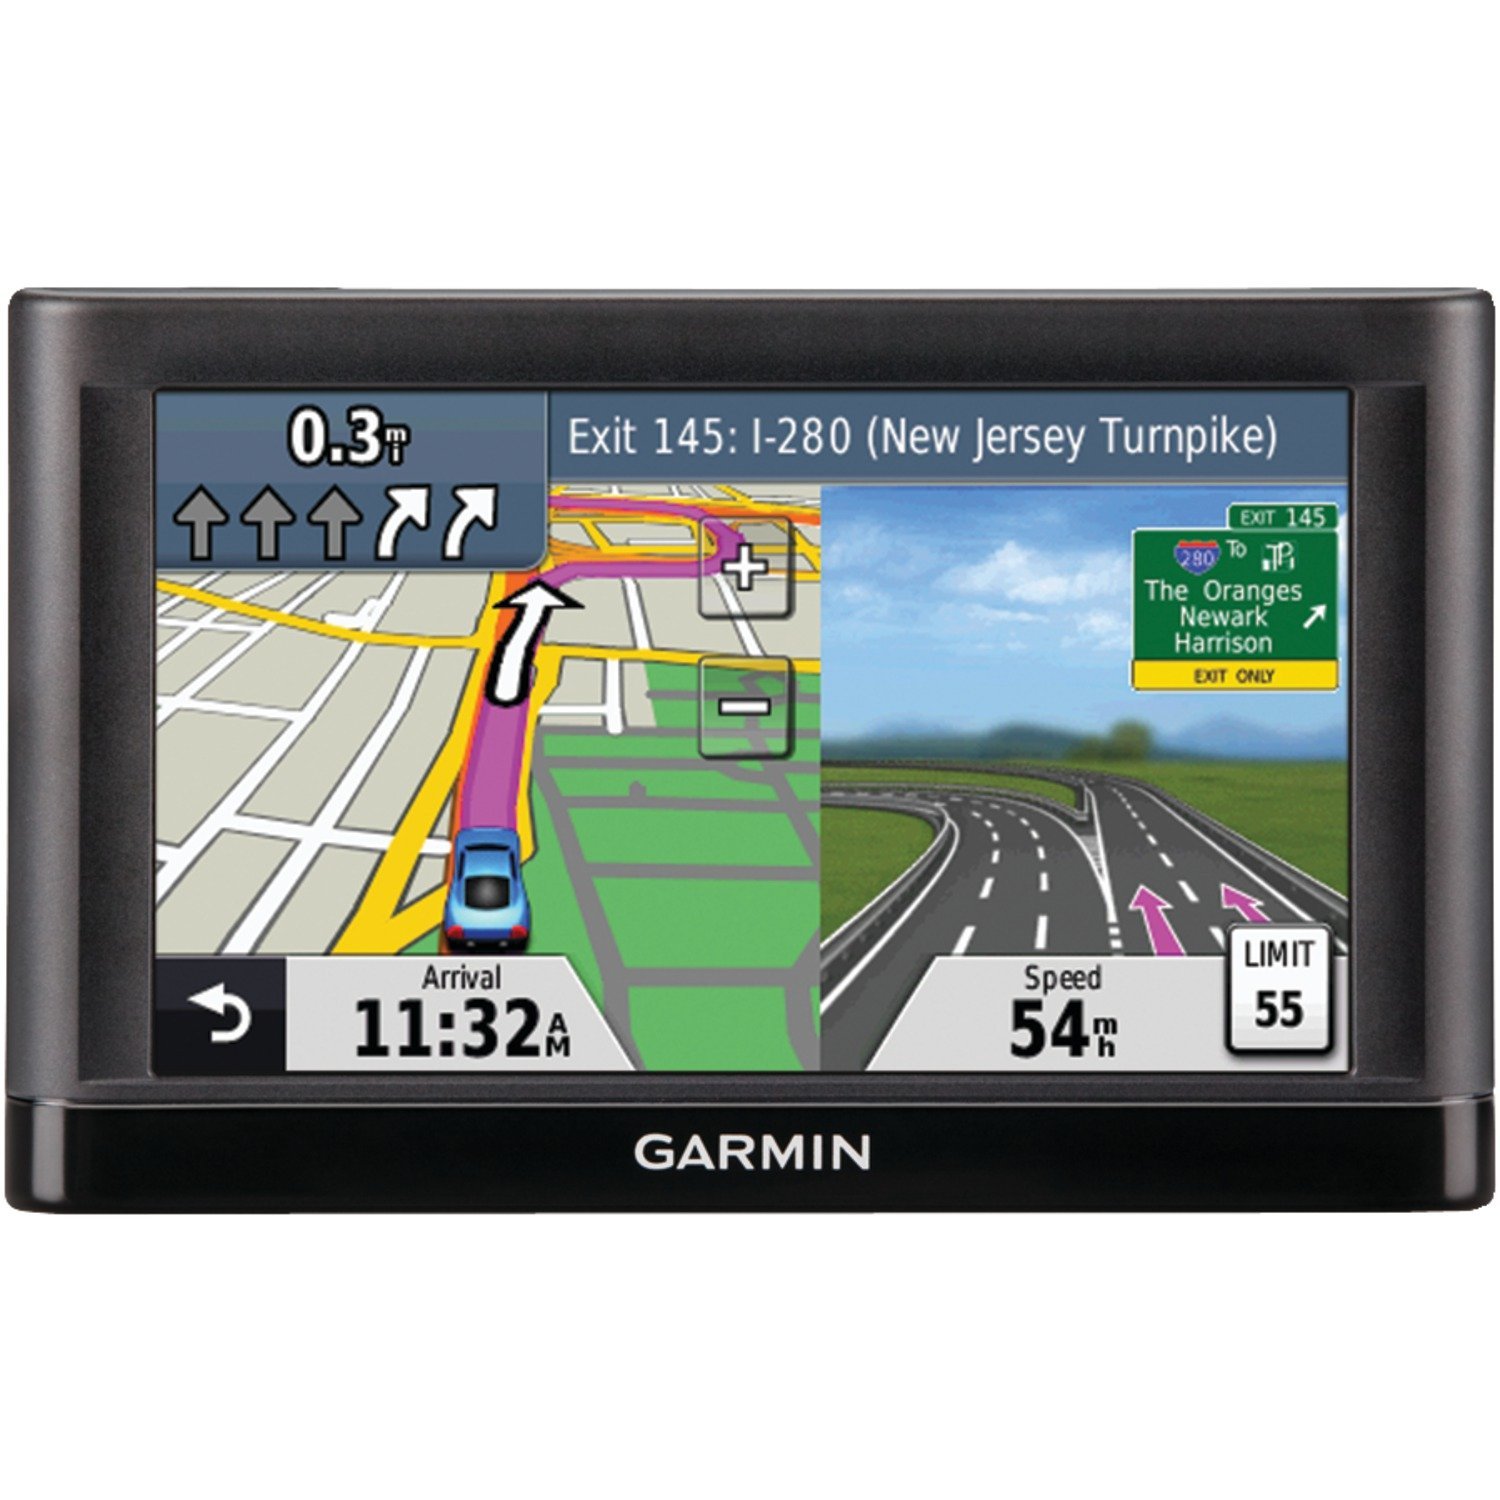  Navigatie GPS Garmin Nuvi 54LM, harta Full Europe + Update gratuit al hartilor pe viata 